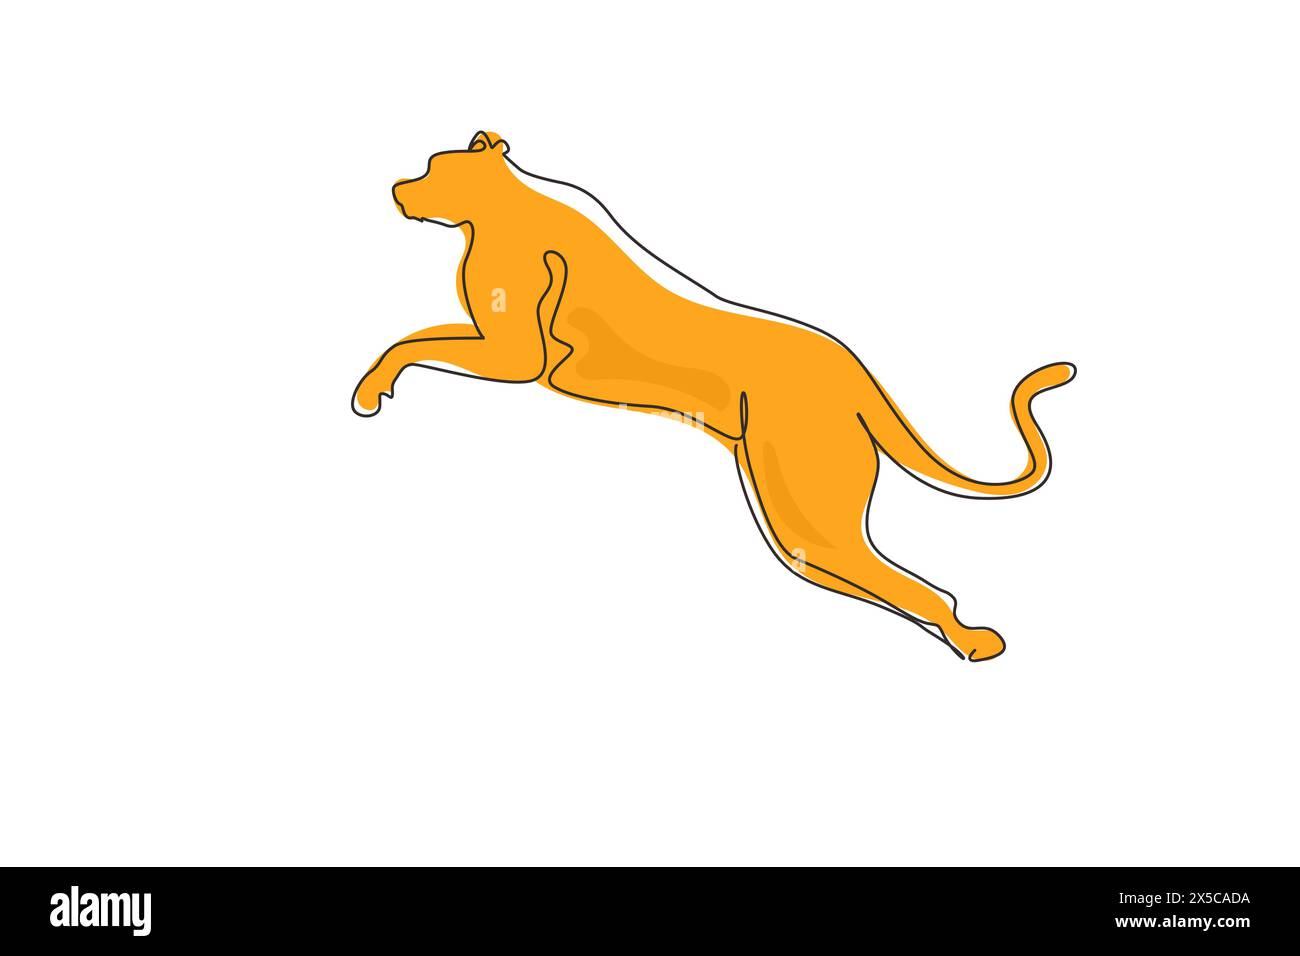 Une seule ligne continue dessinant un guépard fort saute pour l'identité du logo de l'entreprise. Concept de mascotte d'animaux Wildcat pour zoo safari national. Dynamic One Illustration de Vecteur